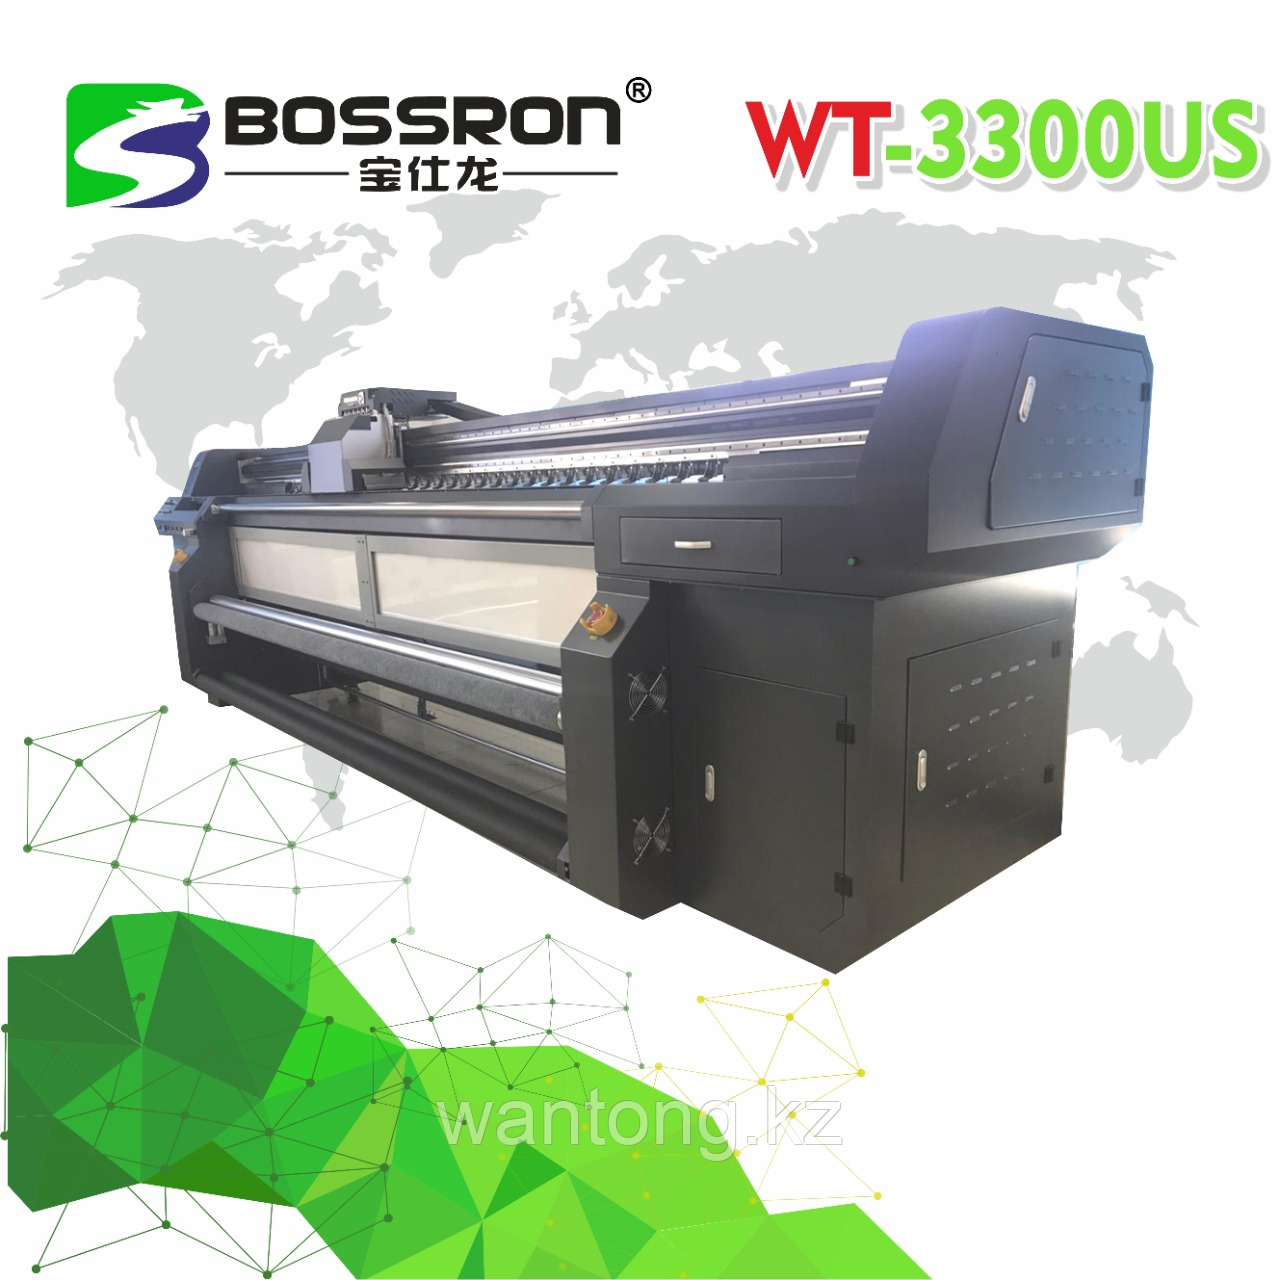 Широкоформатный принтер для натяжного потолка WT-3300US, фото 1